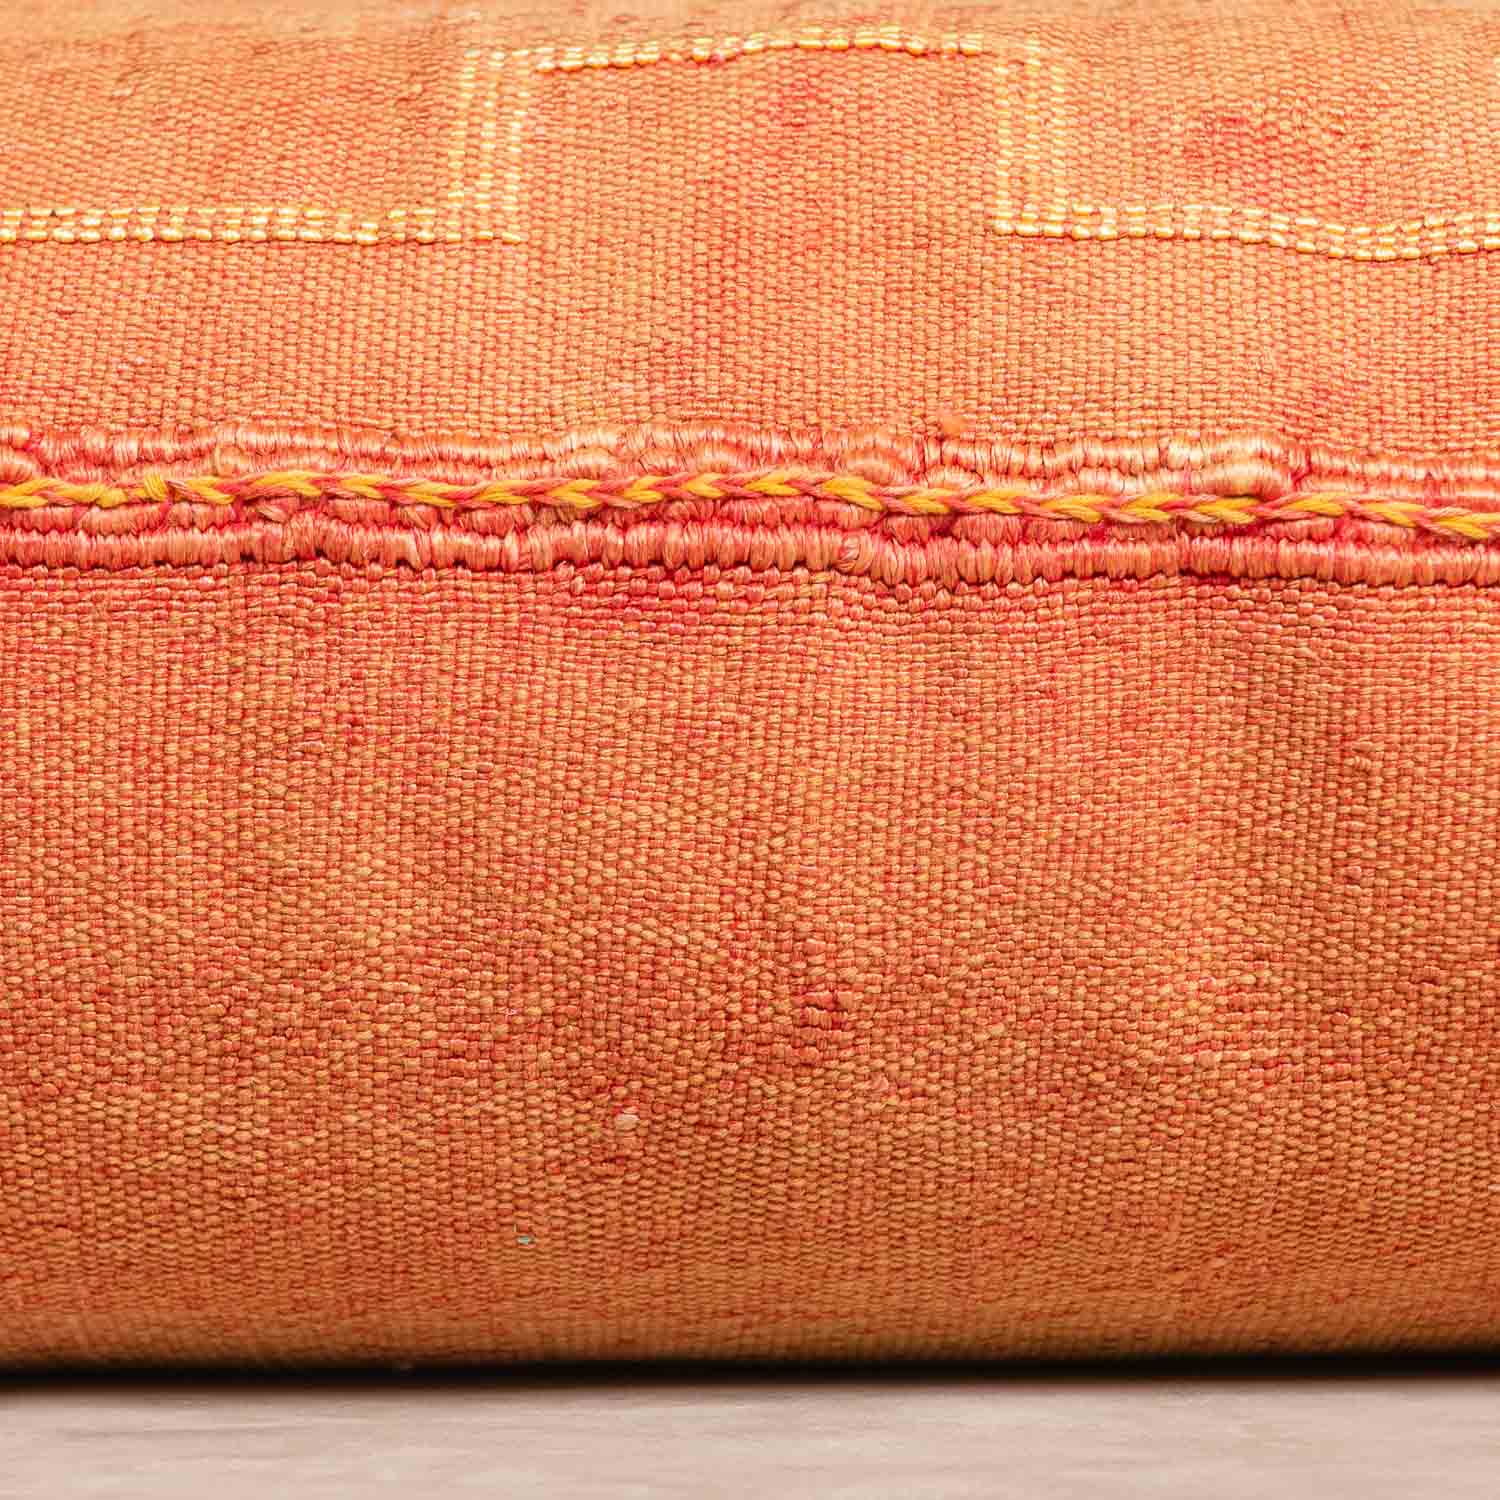 Orange Cactus silk pillow cover